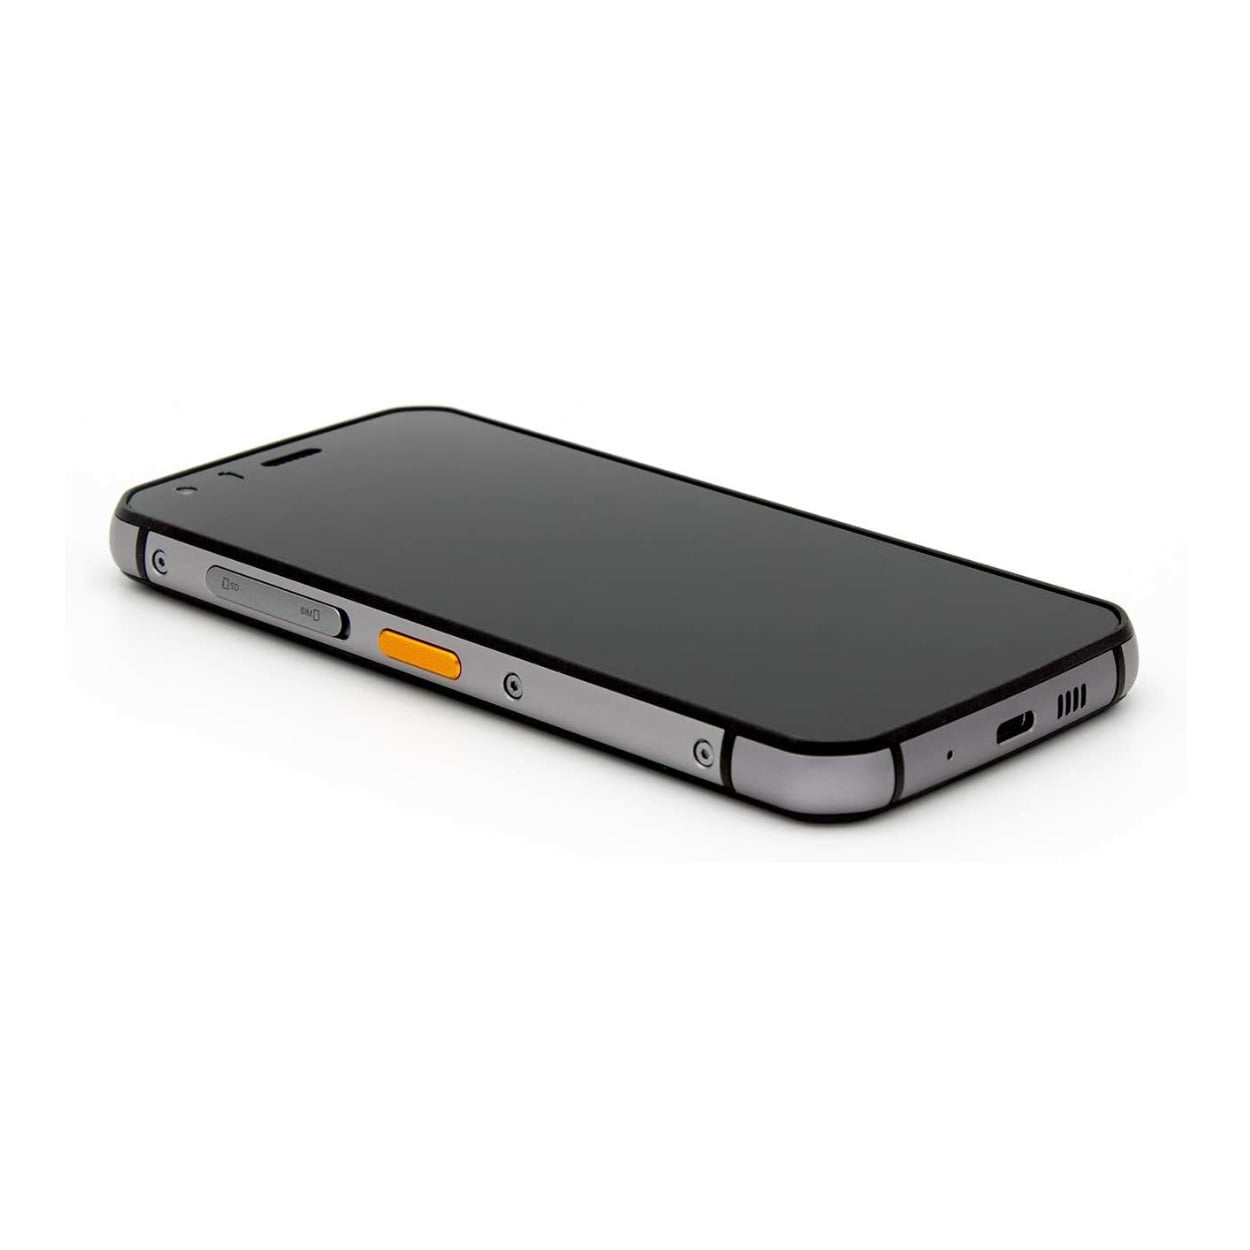 CATERPILLAR Smartphone S62 128 GB, Negro, desbloqueado